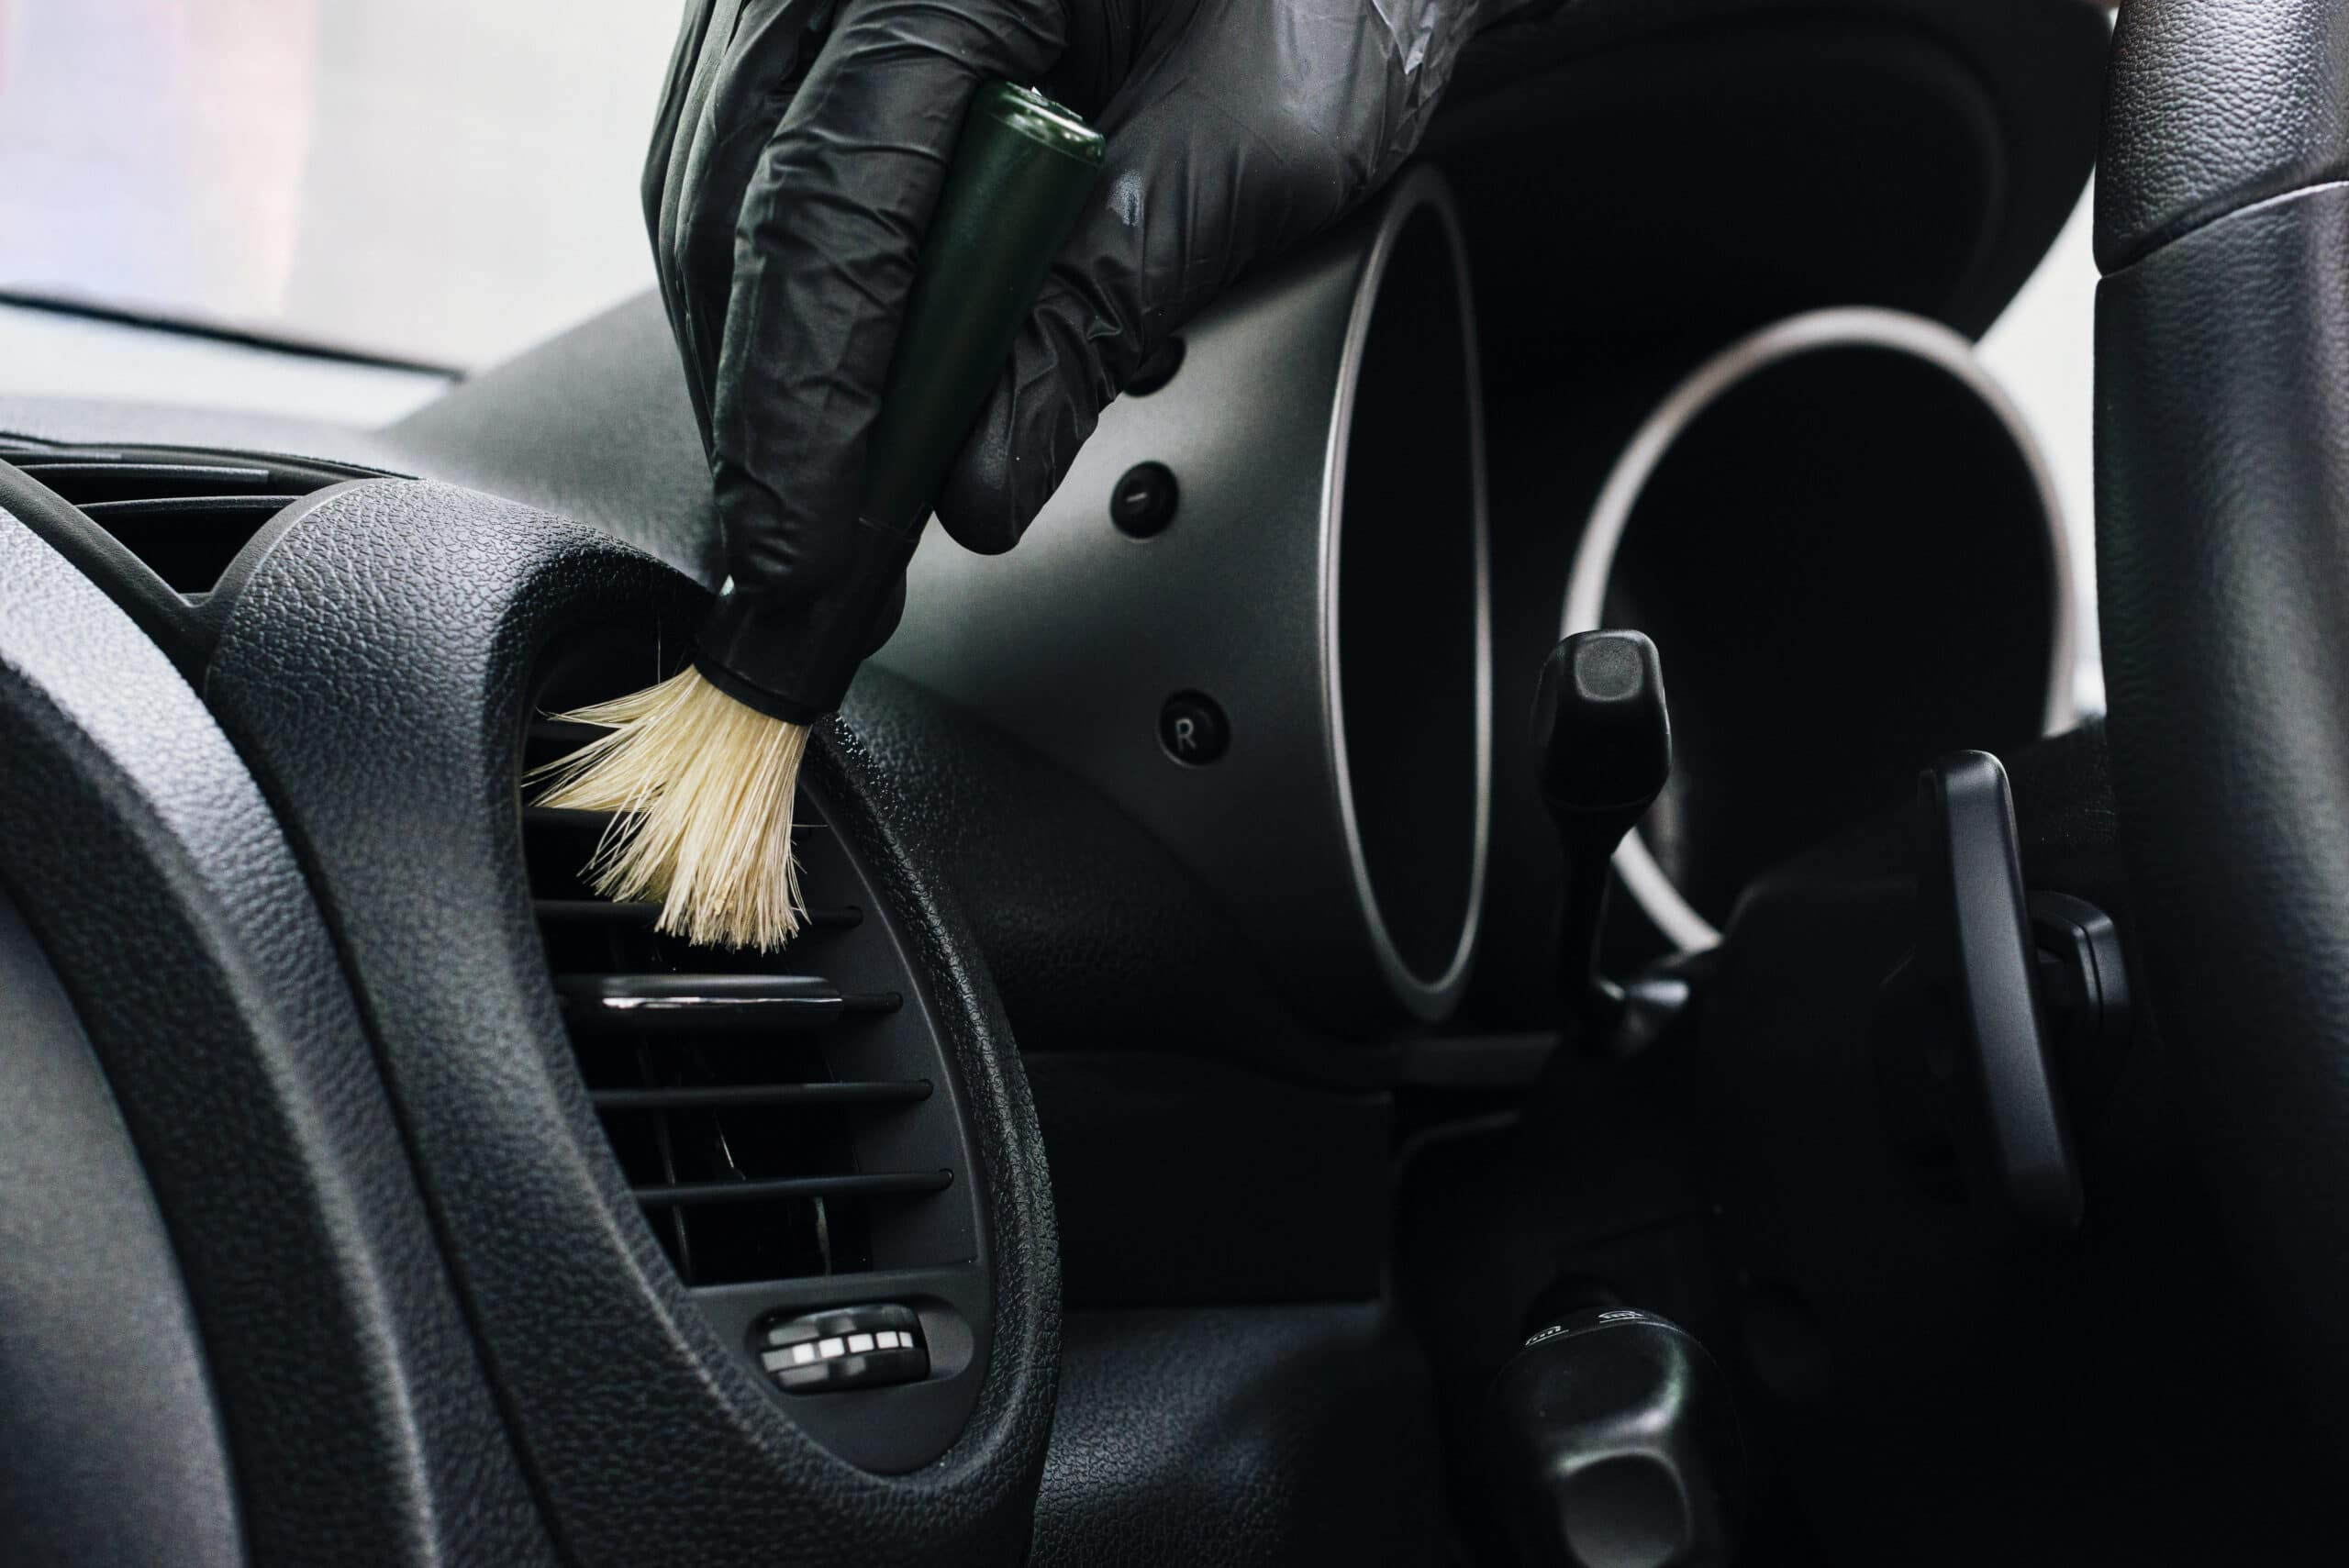 Higienização interna e do Ar Condicionado - Citroën C3